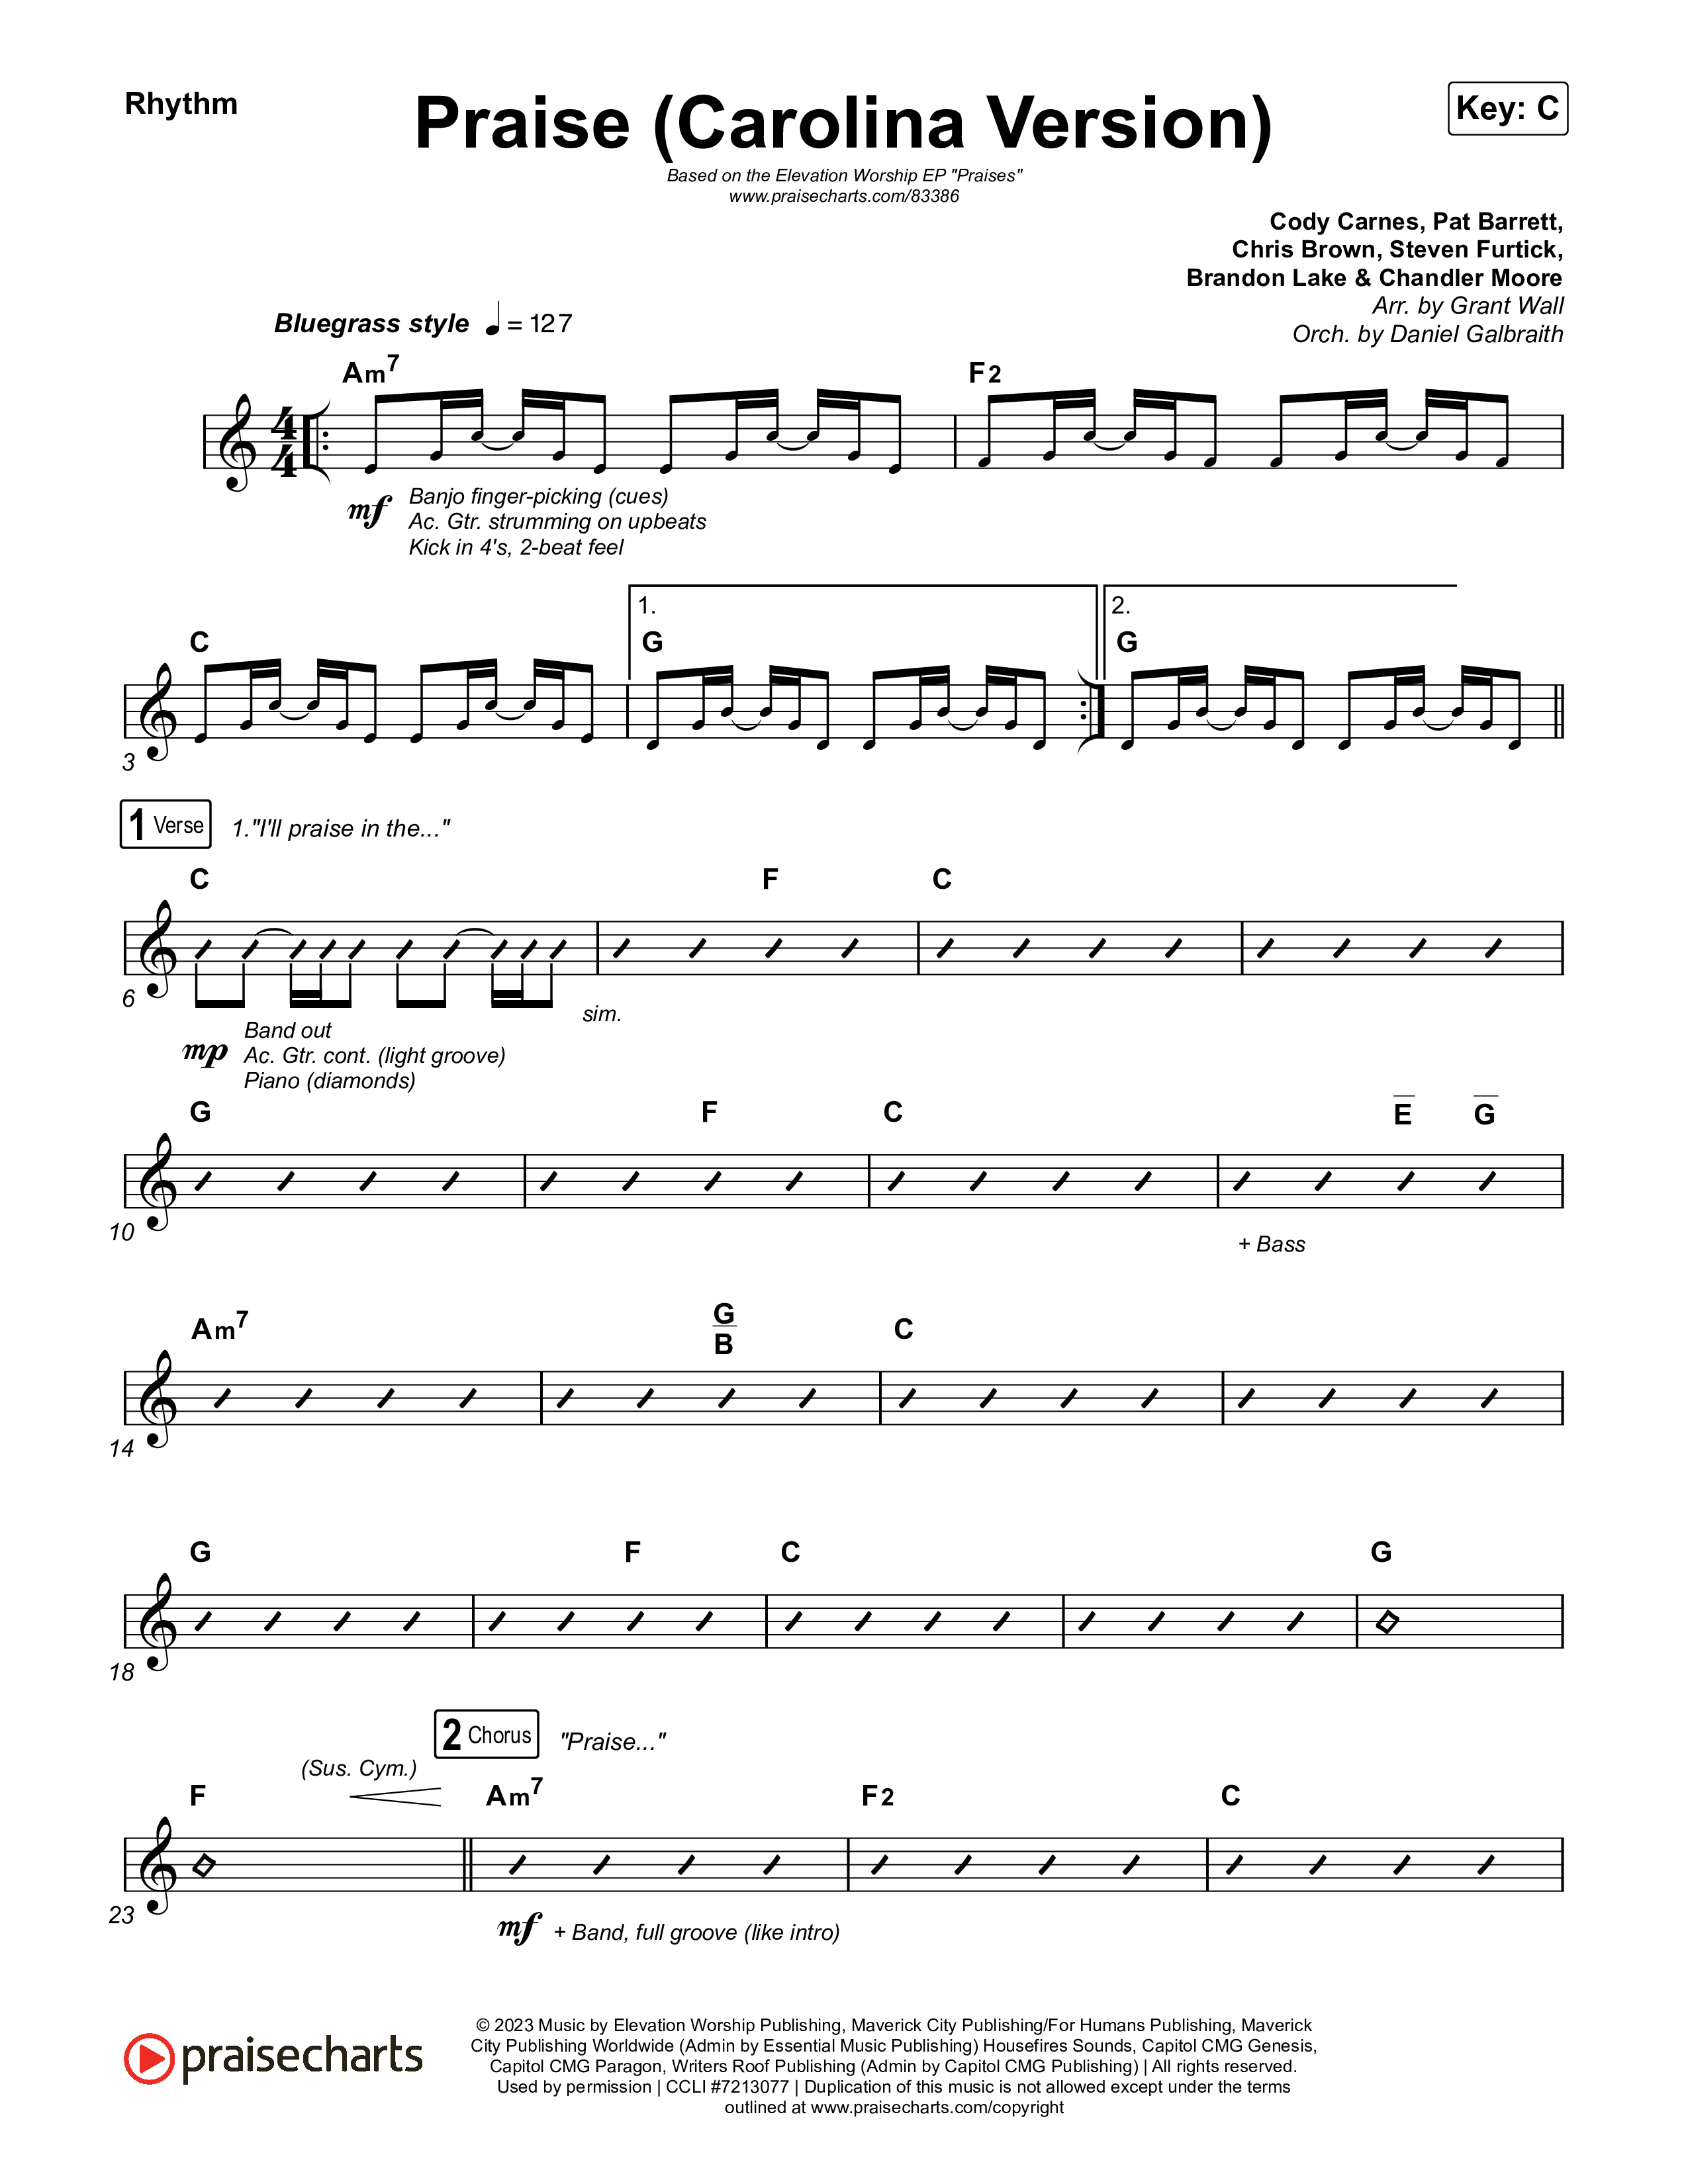 Praise (Carolina Version) Rhythm Pack (Elevation Worship)